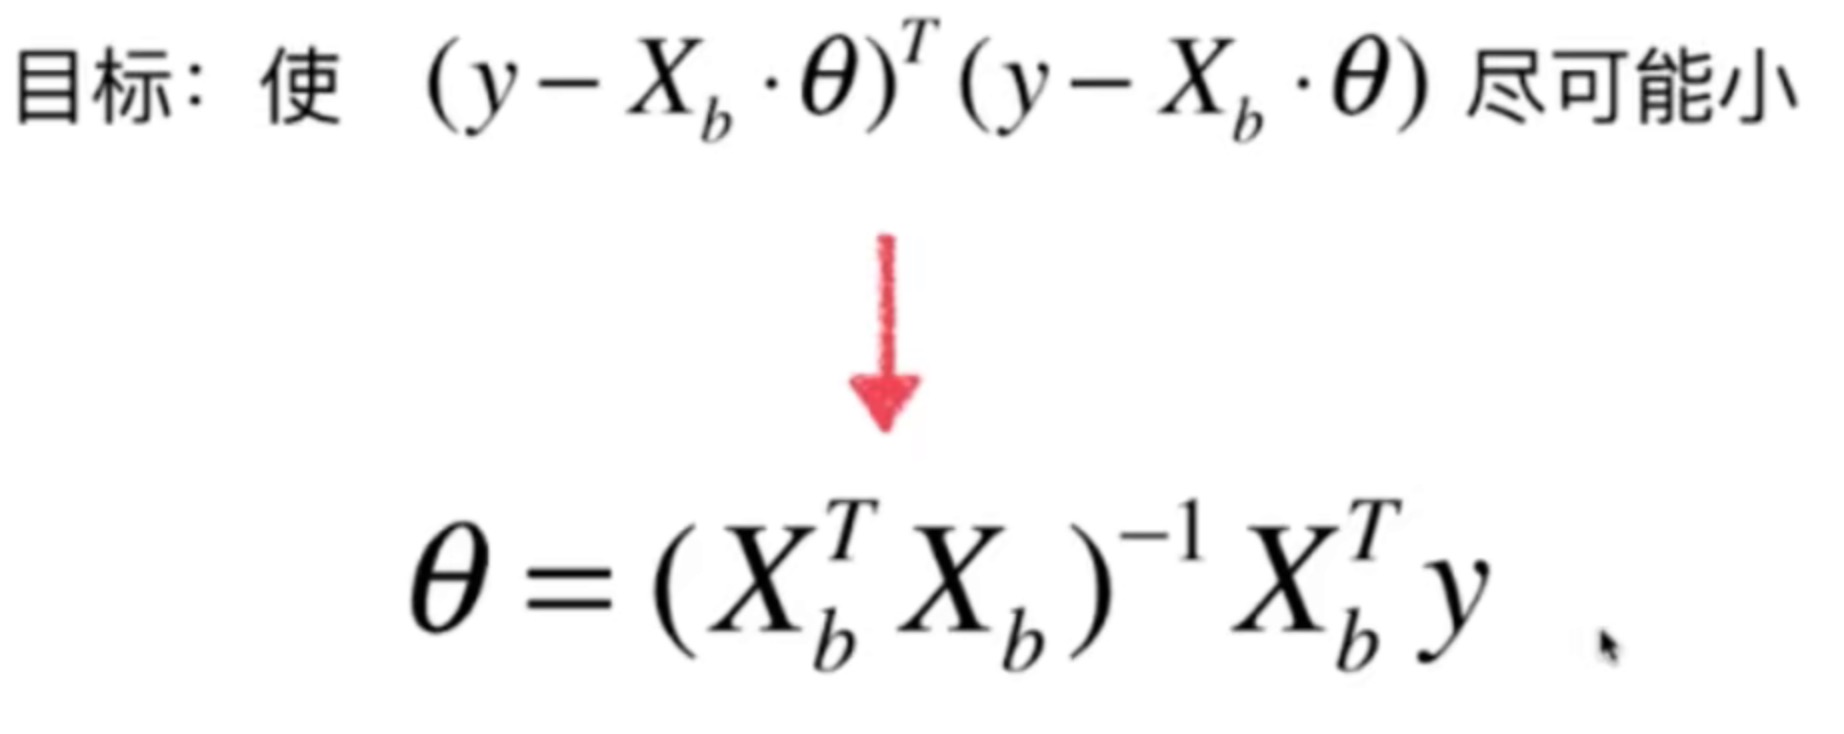 p15-多元线性回归的正规方程解